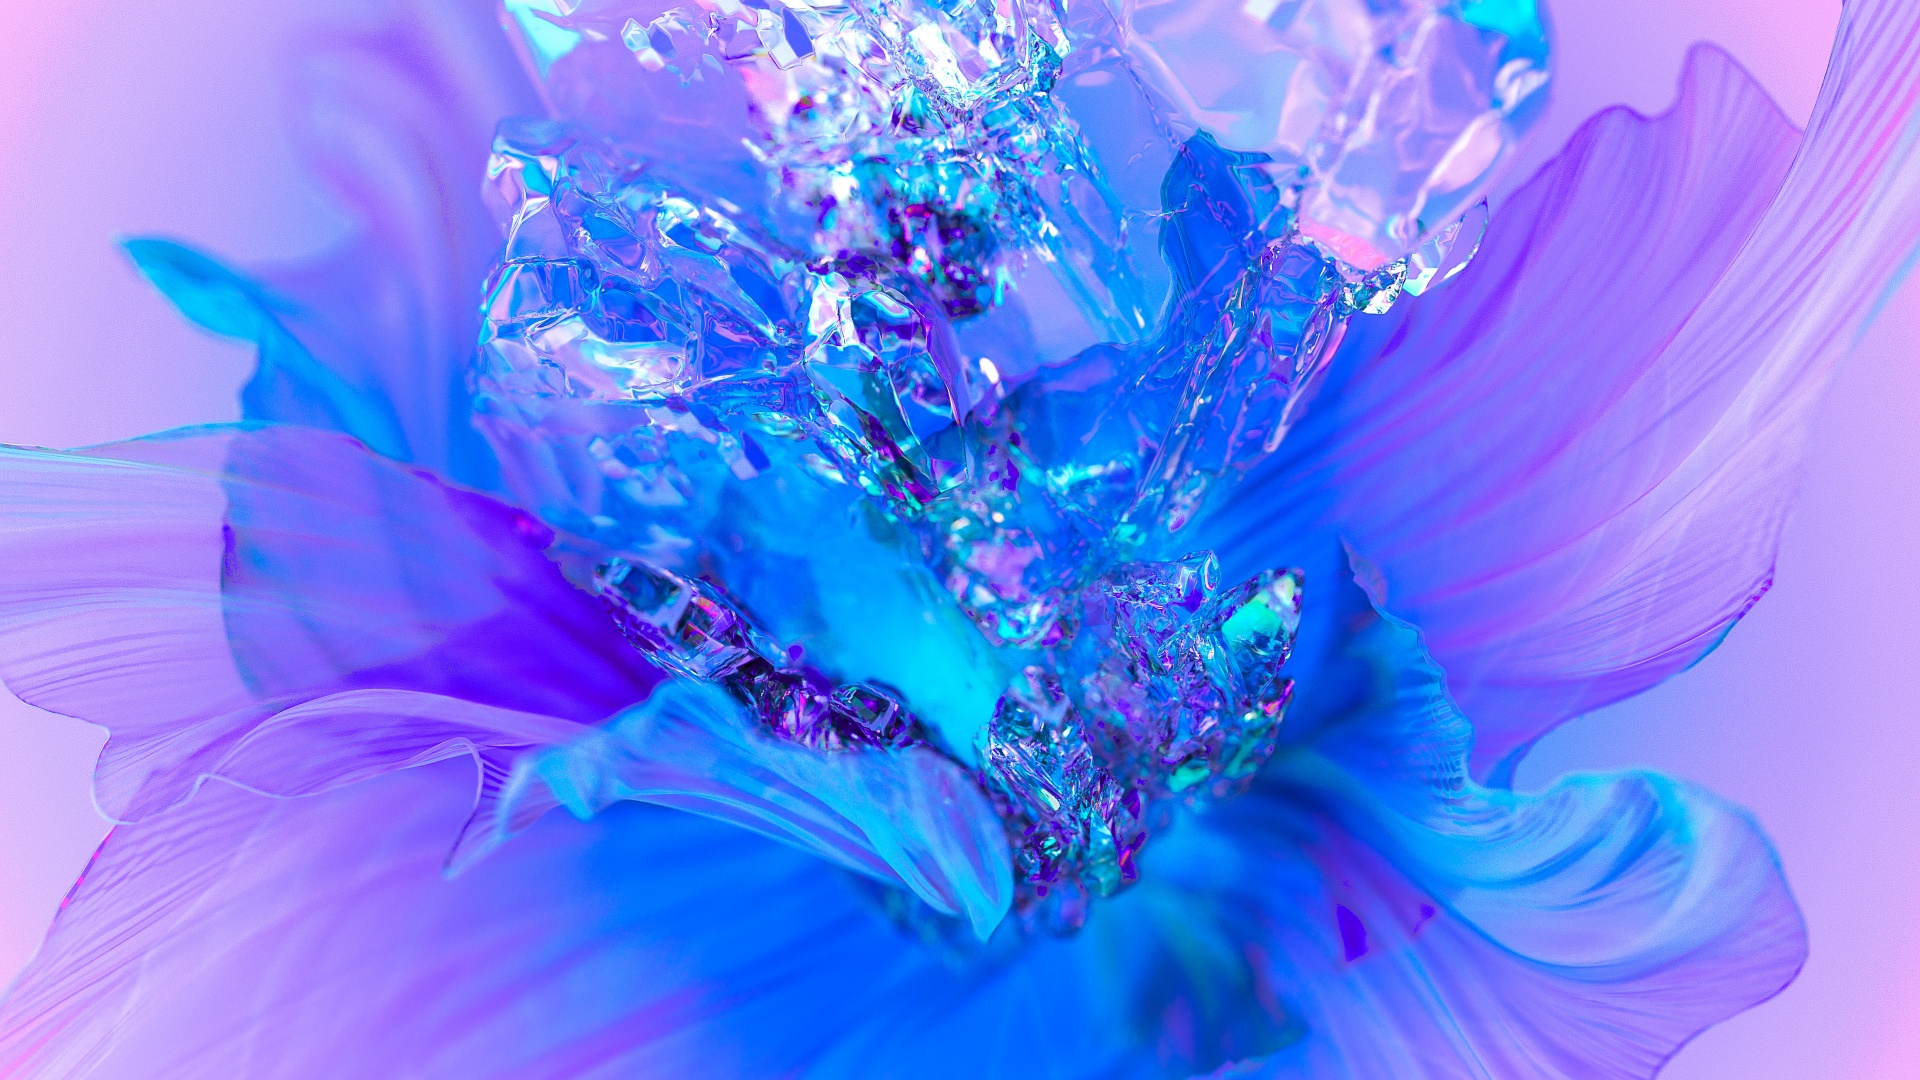 Với hình nền Purple Flower Backgrounds, bạn sẽ được trải nghiệm một màn hình sinh động, hòa quyện với những mẫu hoa rực rỡ và sắc màu đa dạng. Hãy để những hình ảnh đẹp này mang đến cho bạn cảm giác thư giãn và bình yên.